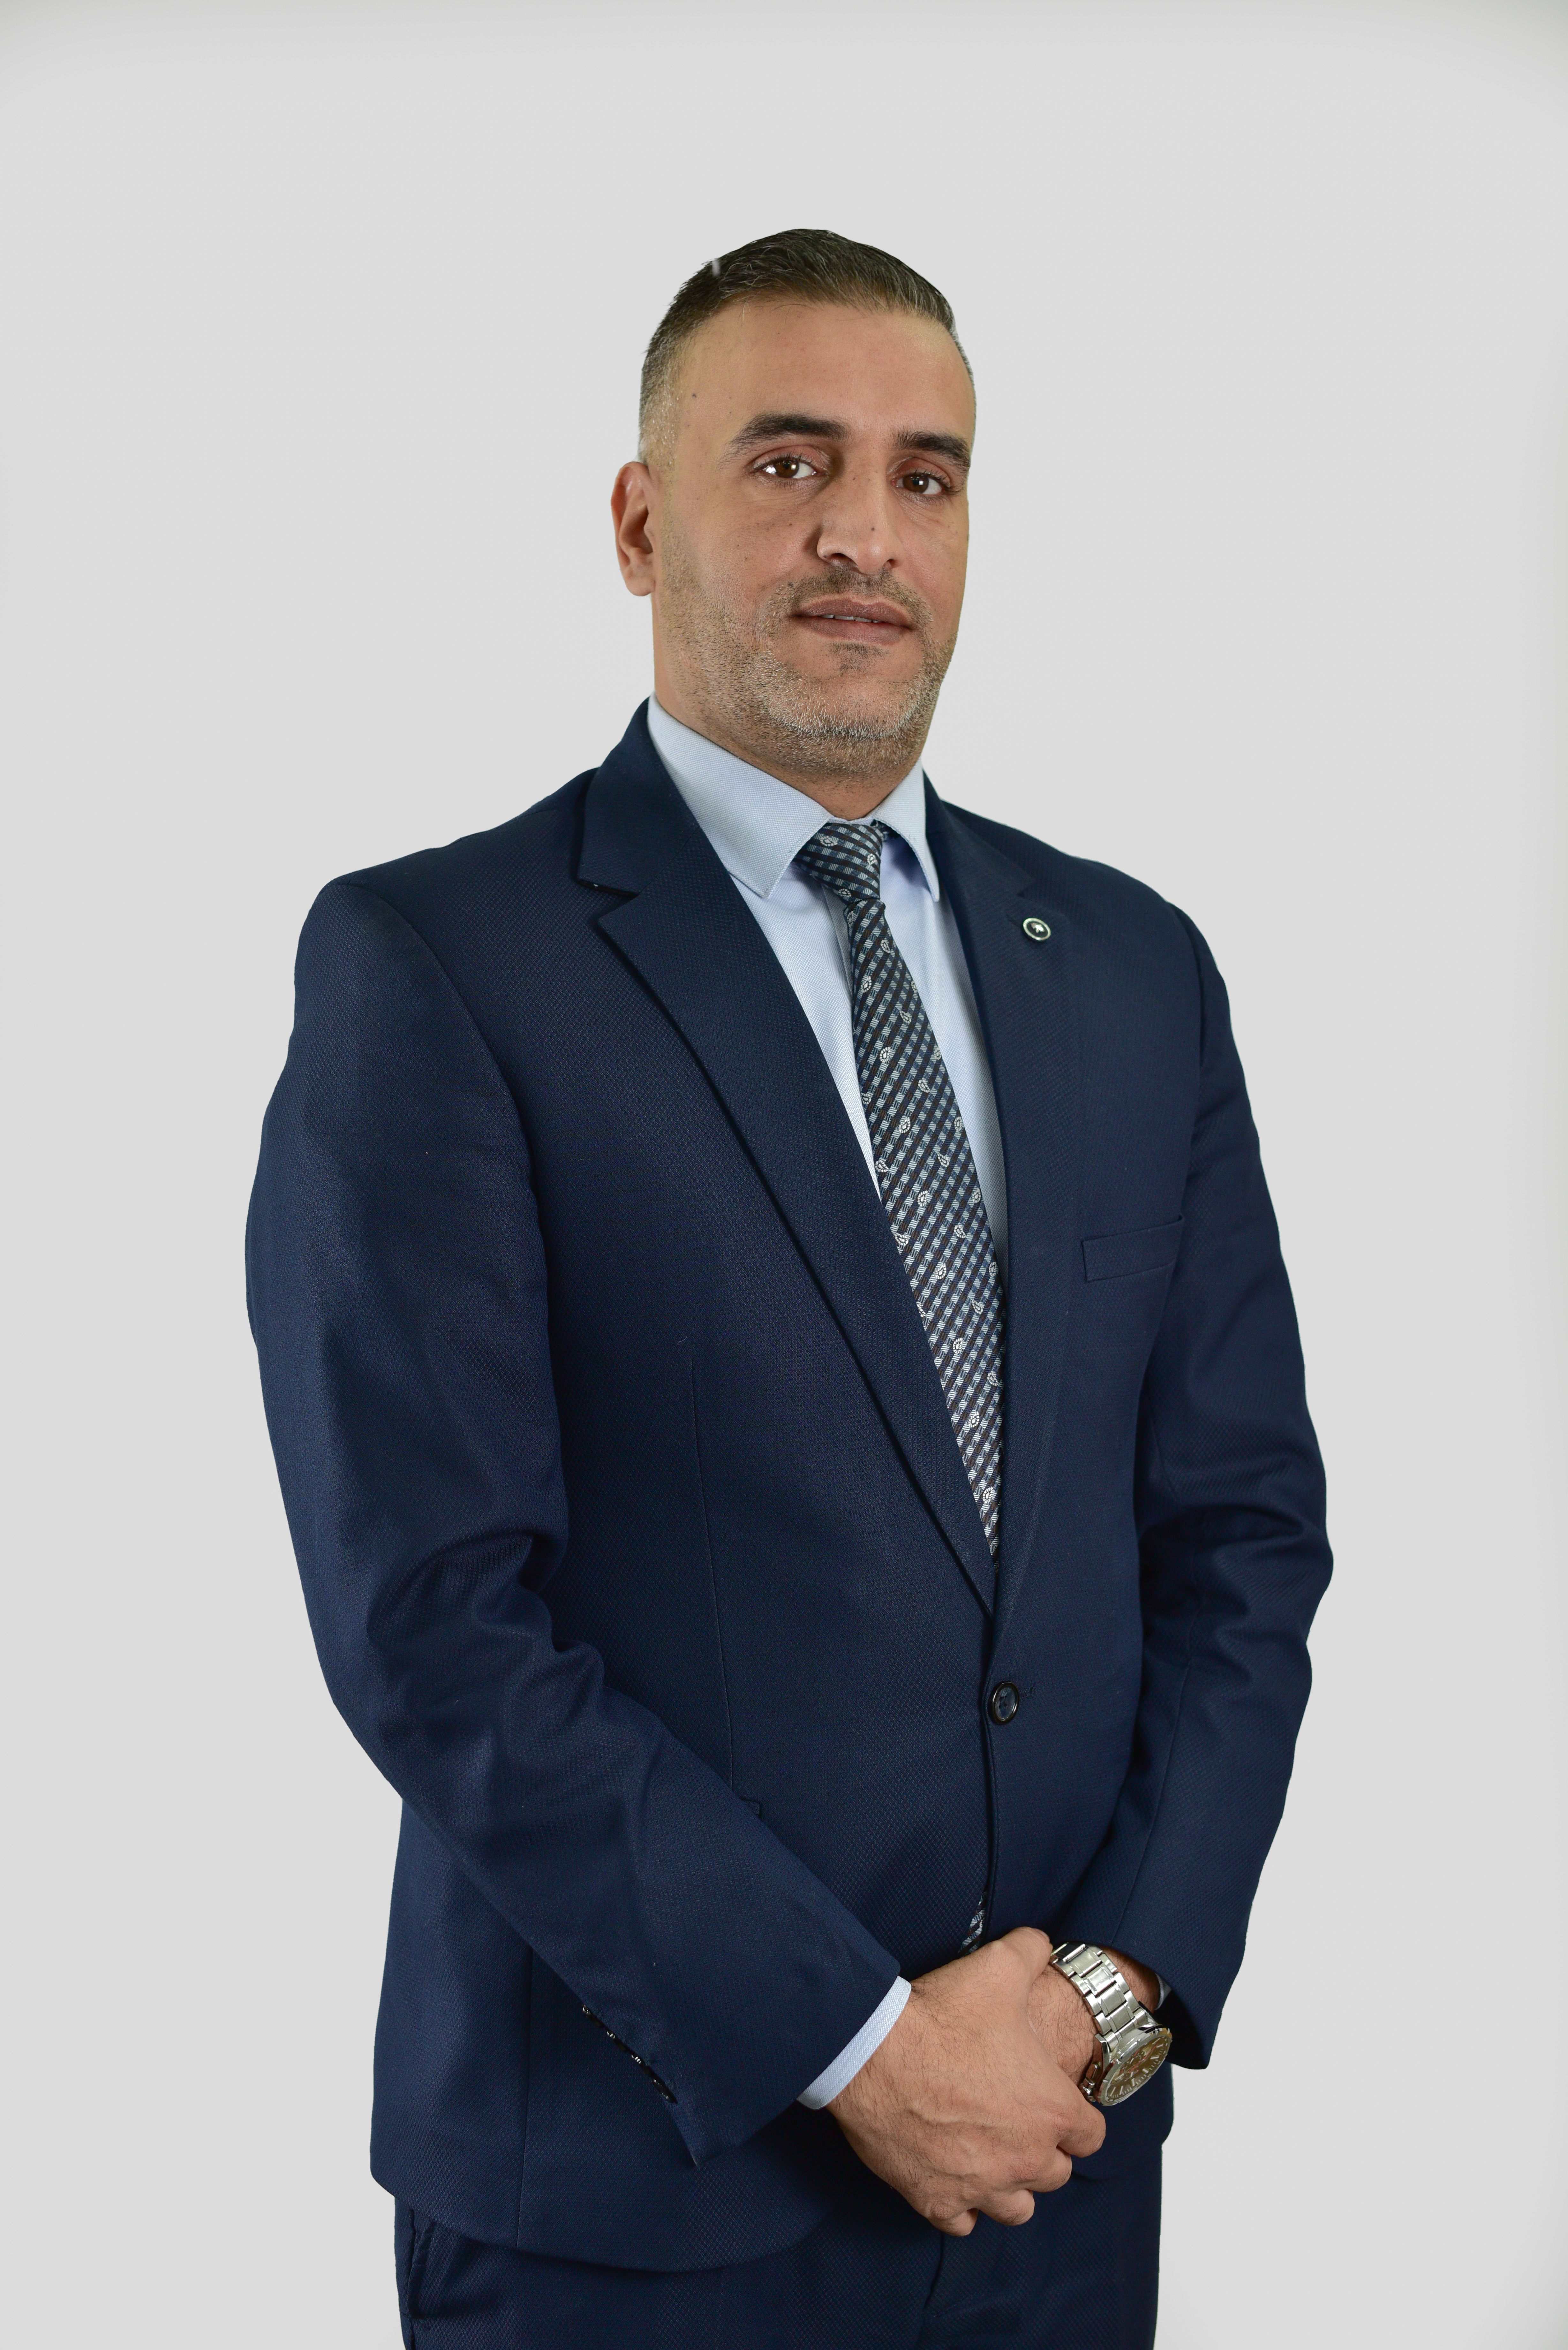 Mr. Mahmoud Ahmad Suliman Al Rbeihat